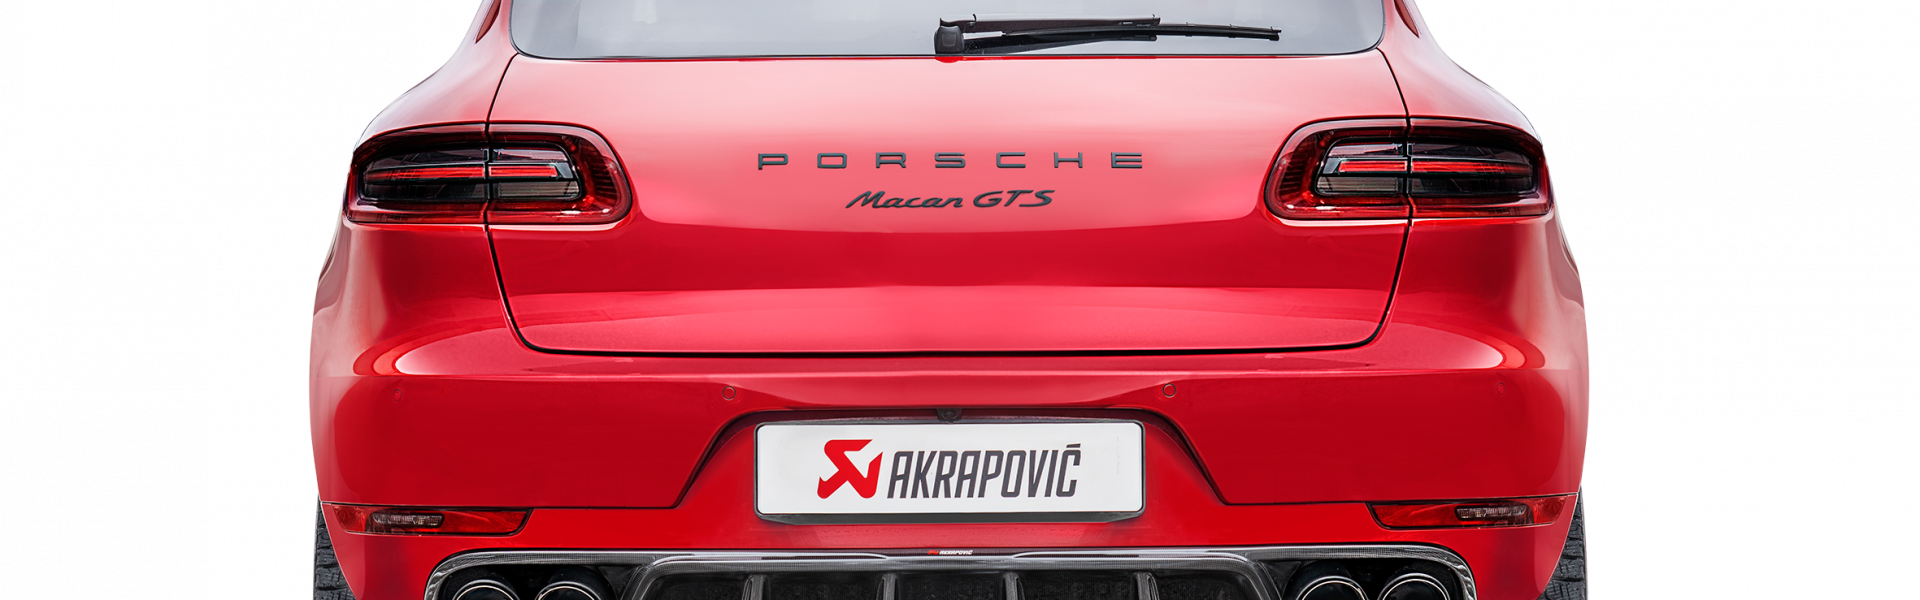 Porsche Macan GTS 95B